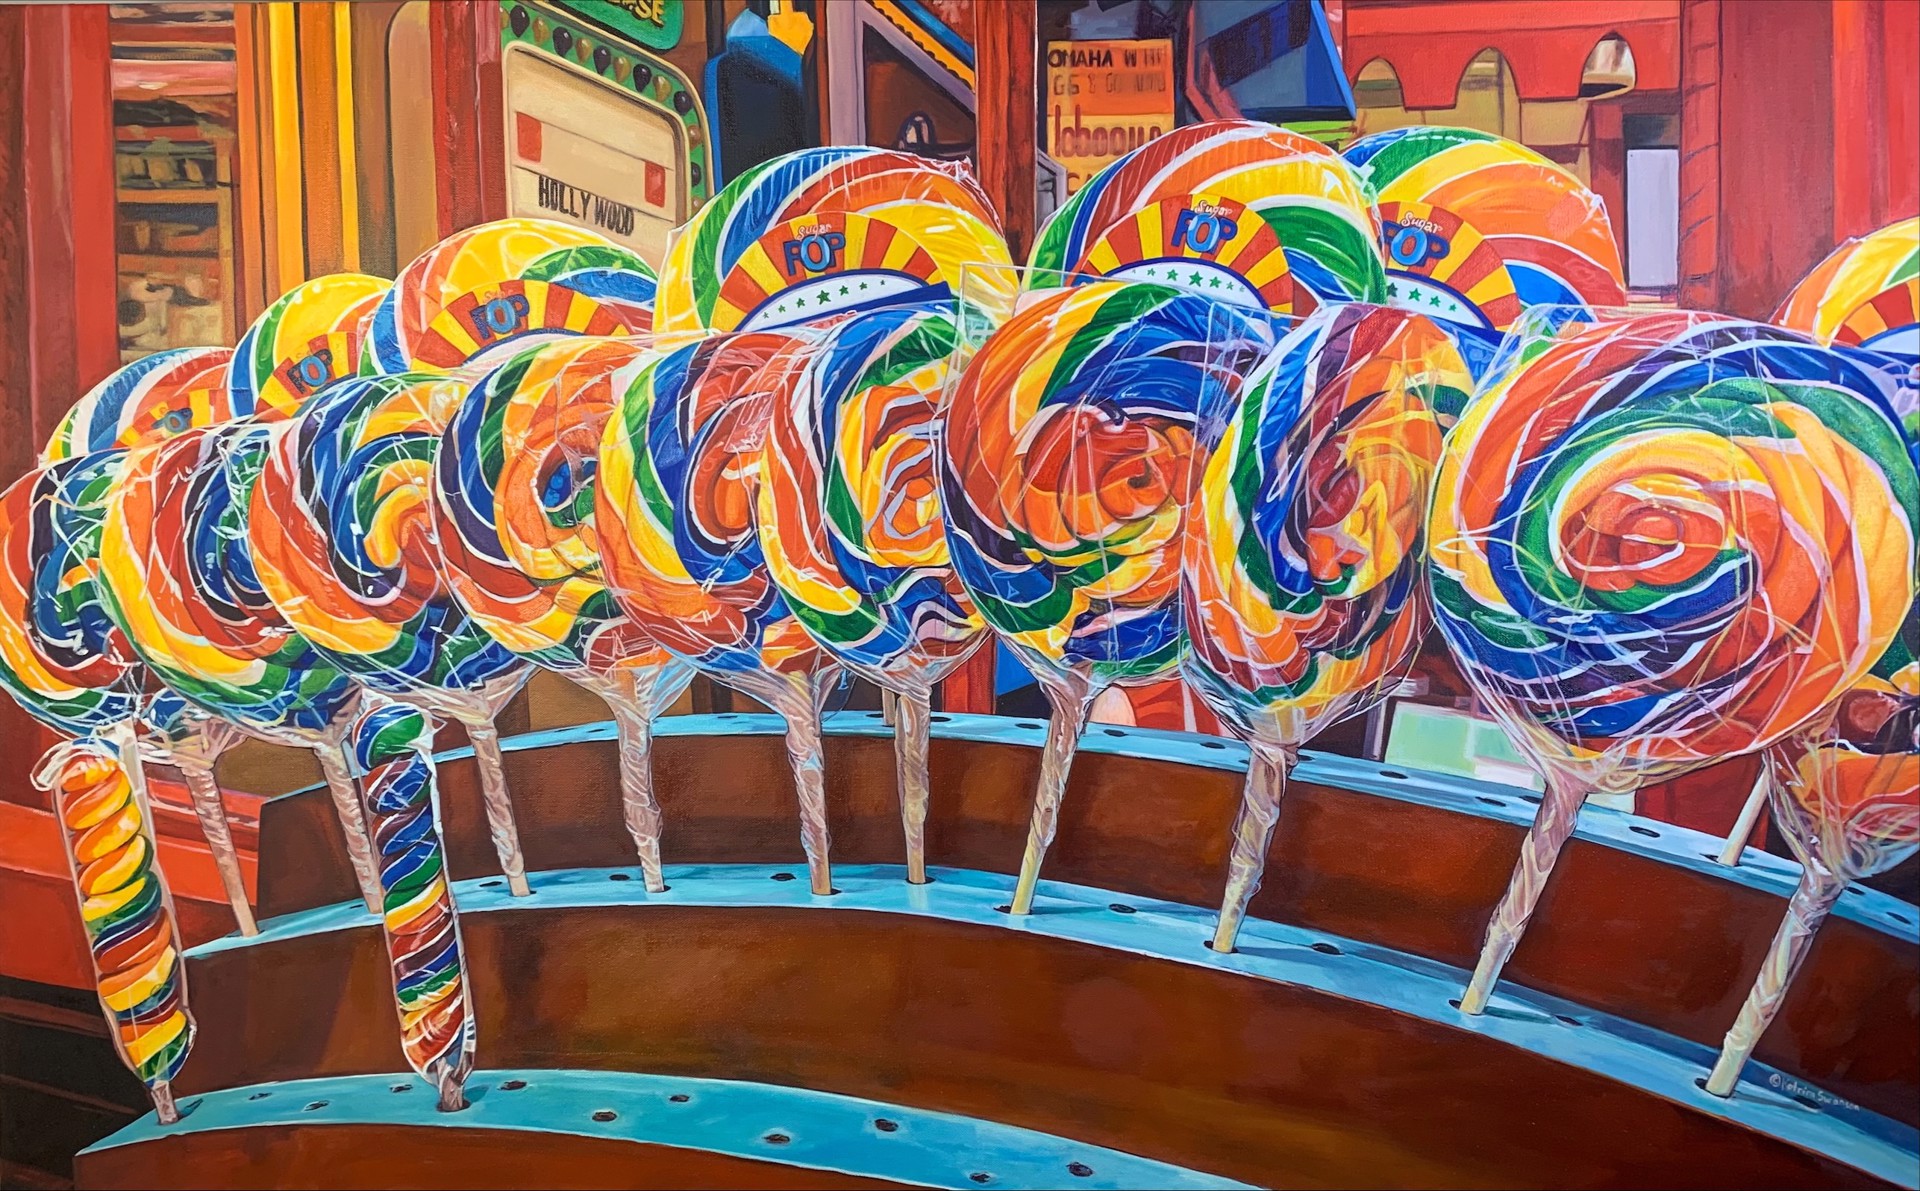 Swirly Lollipops by Katrina Swanson